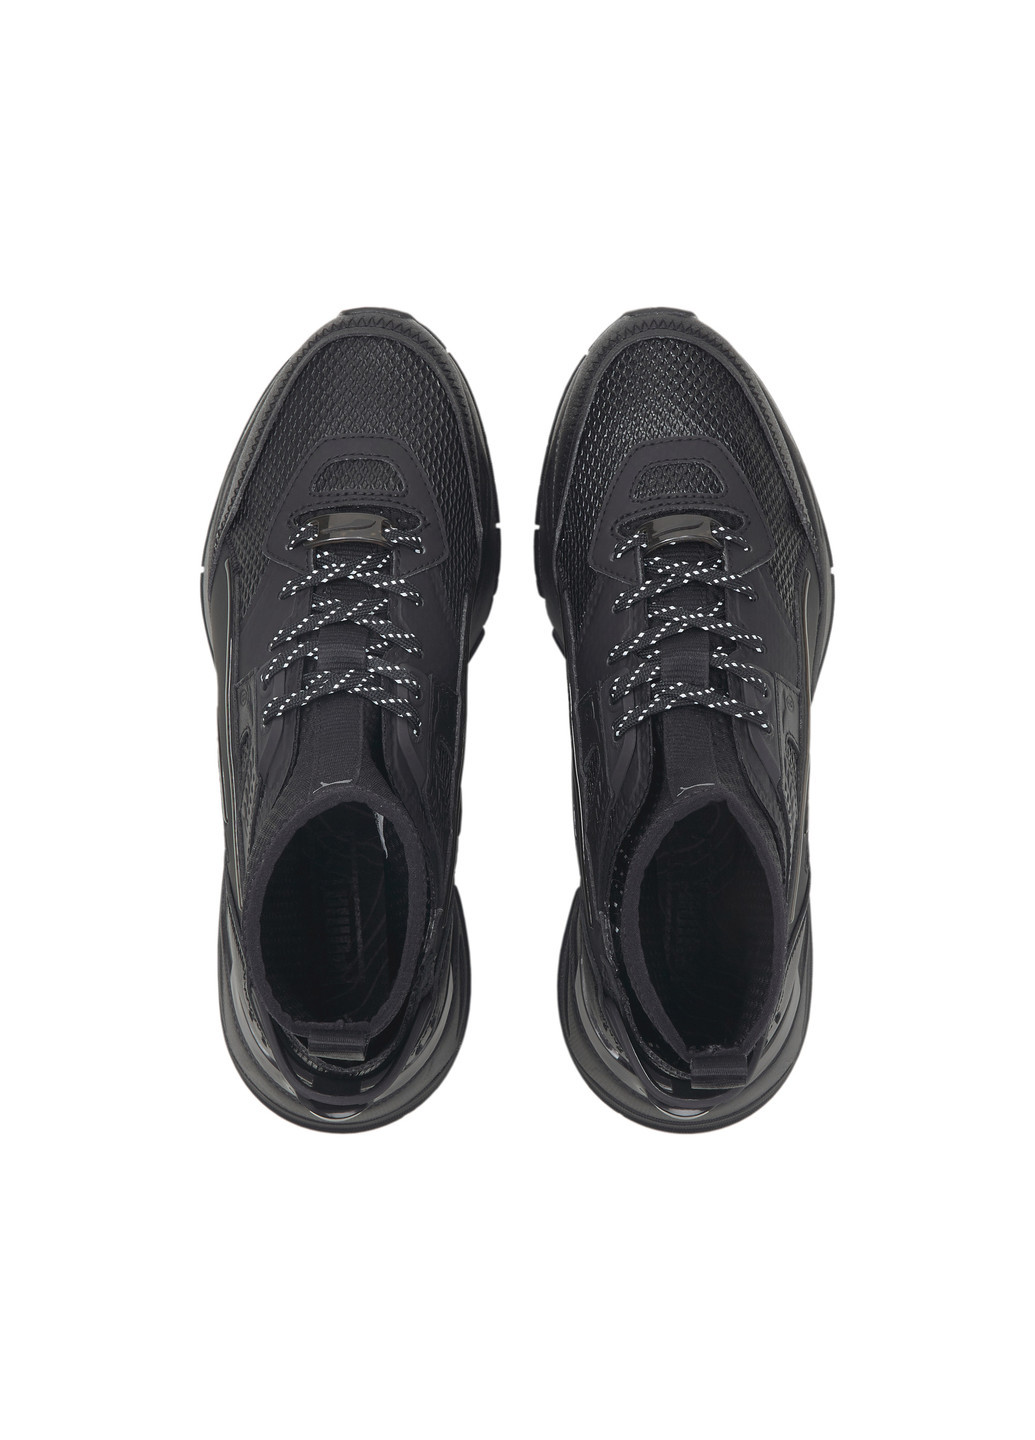 Черные кроссовки mirage sport ad4pt trainers Puma